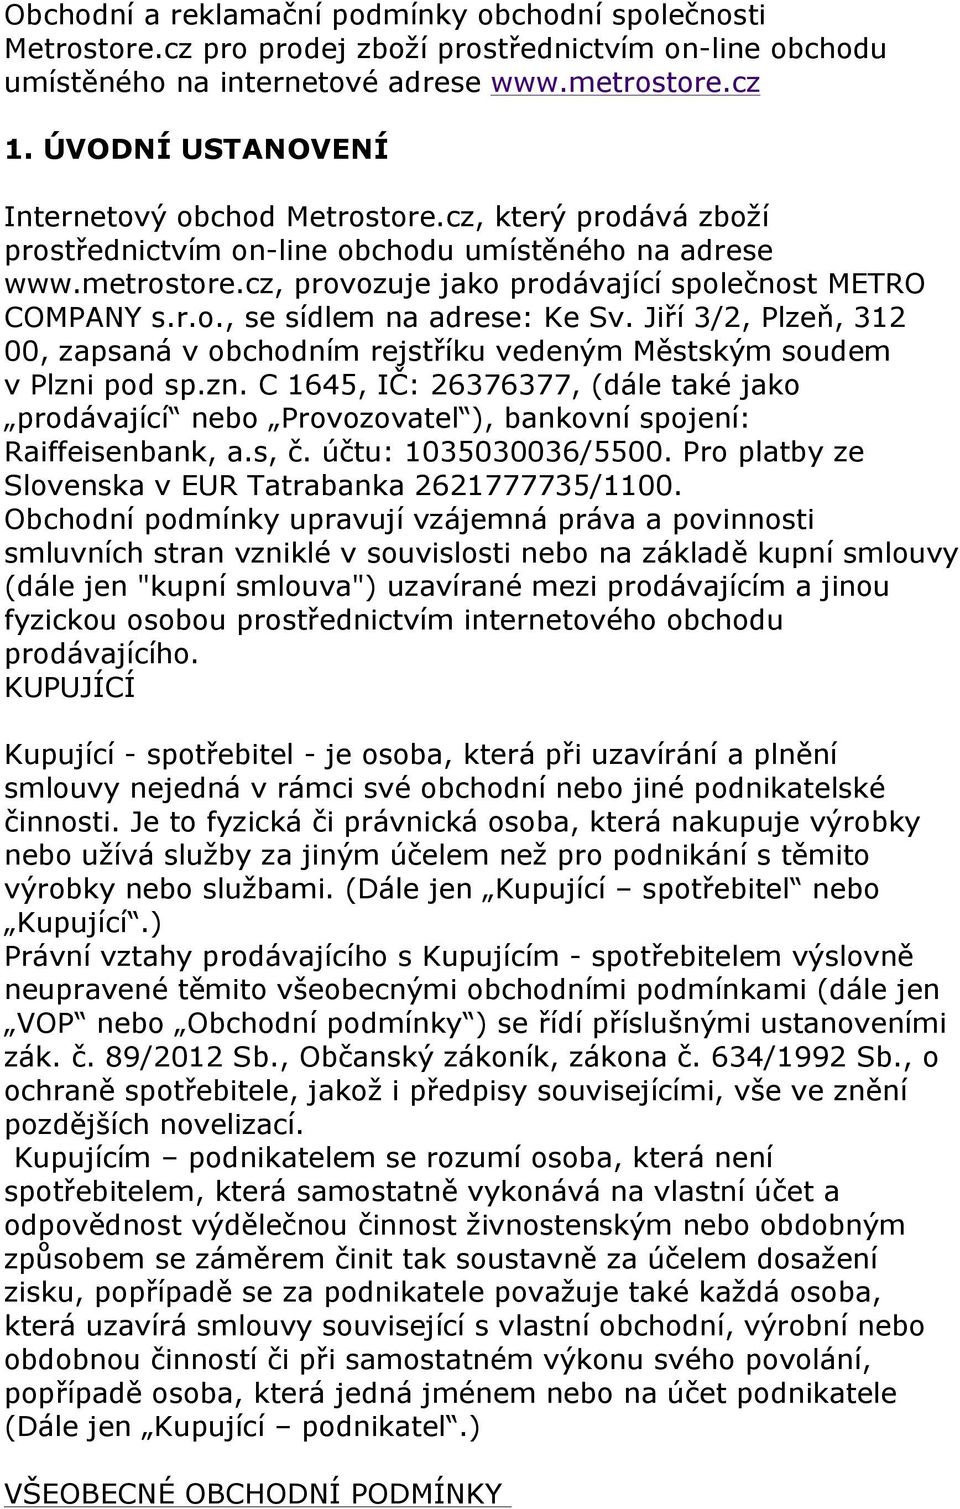 Jiří 3/2, Plzeň, 312 00, zapsaná v obchodním rejstříku vedeným Městským soudem v Plzni pod sp.zn. C 1645, IČ: 26376377, (dále také jako prodávající nebo Provozovatel ), bankovní spojení: Raiffeisenbank, a.